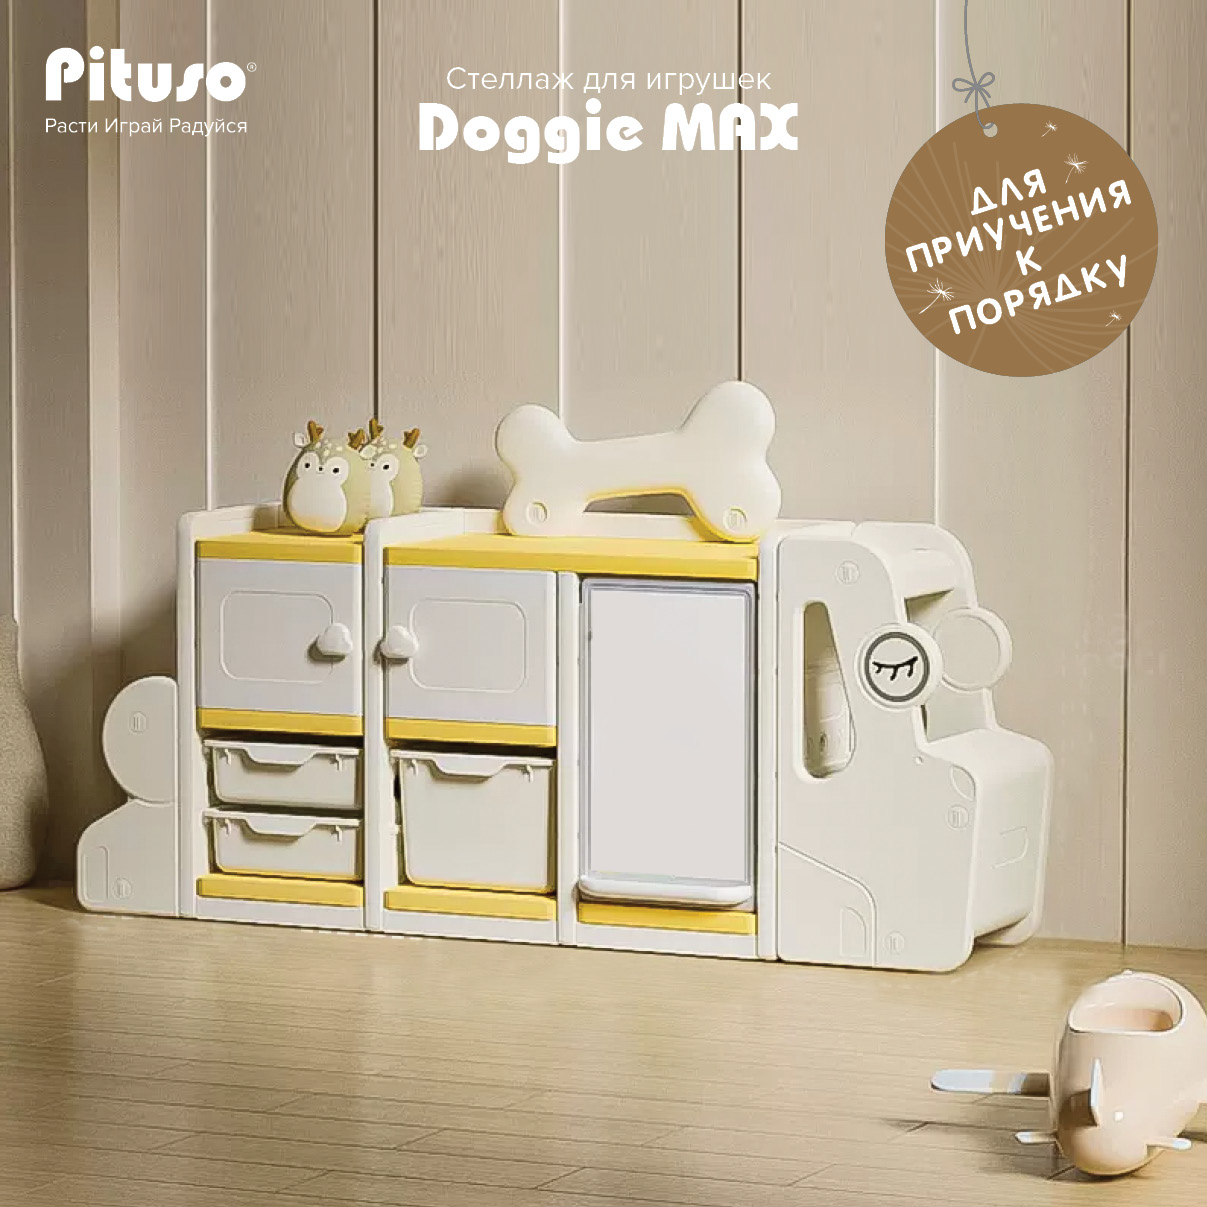 Стеллаж для игрушек с ящиками Pituso Doggie Max, доска для рисования, бежевый, желтый